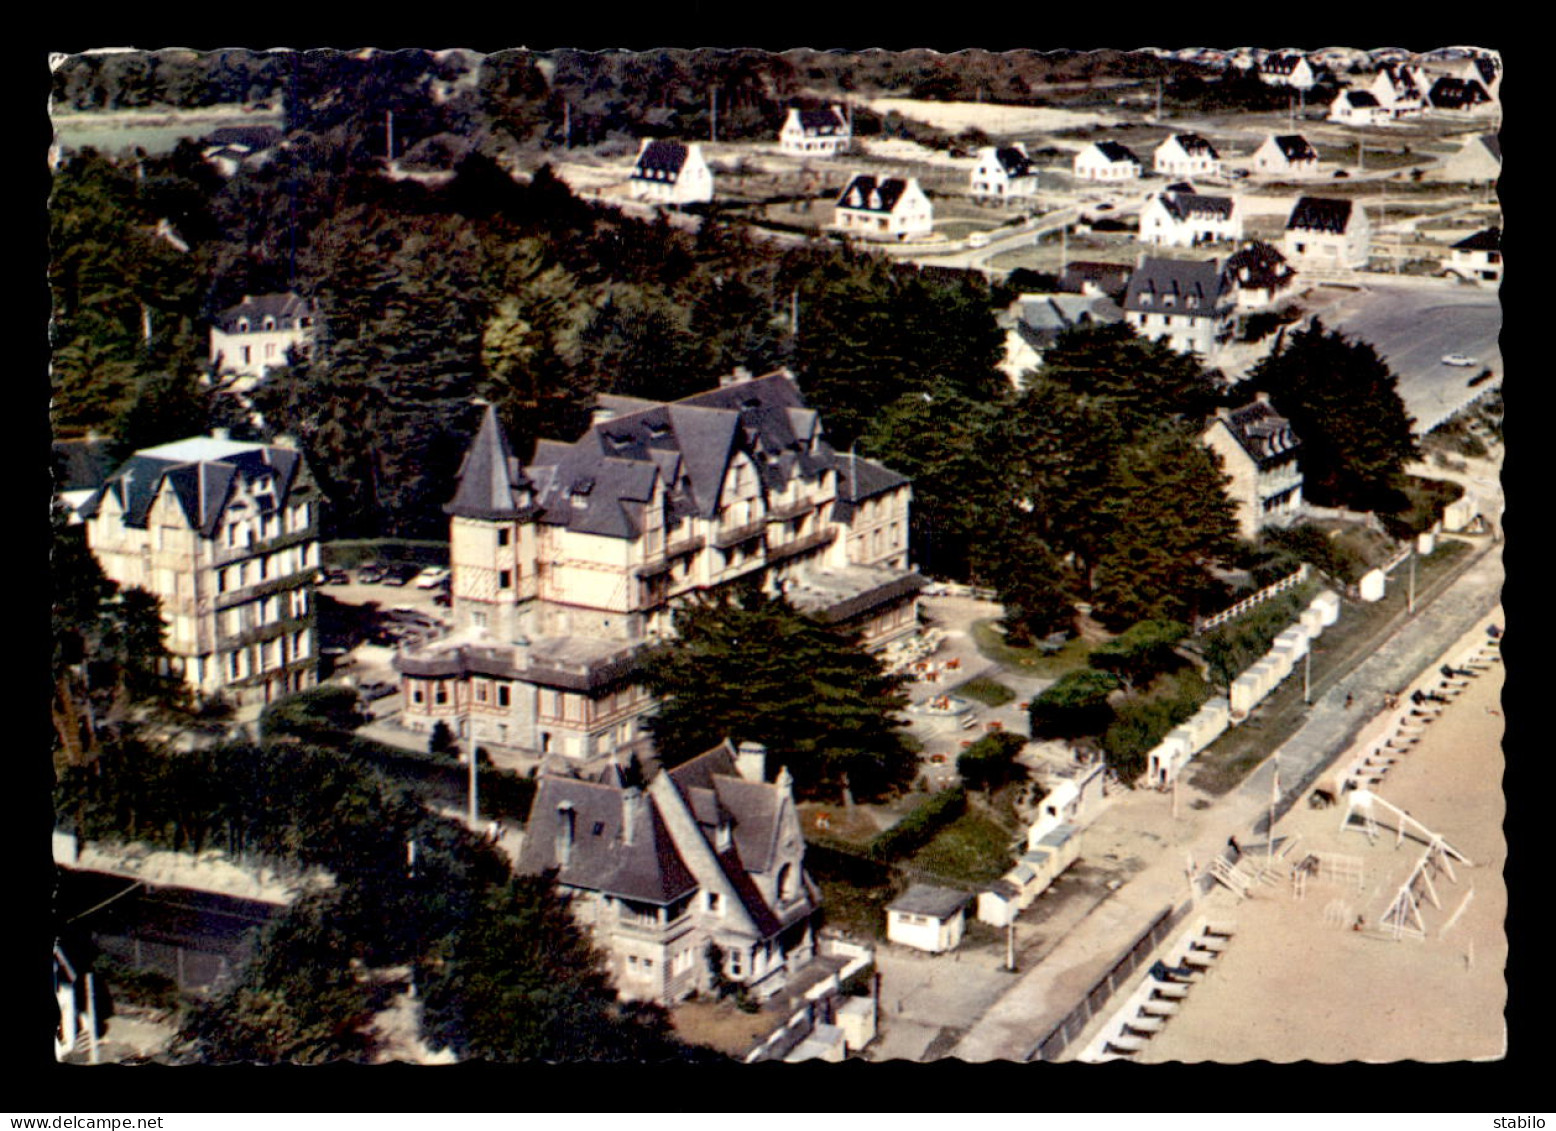 22 - SAINT-CAST - VUE AERIENNE - GRAND HOTEL "AR-VRO" - Saint-Cast-le-Guildo